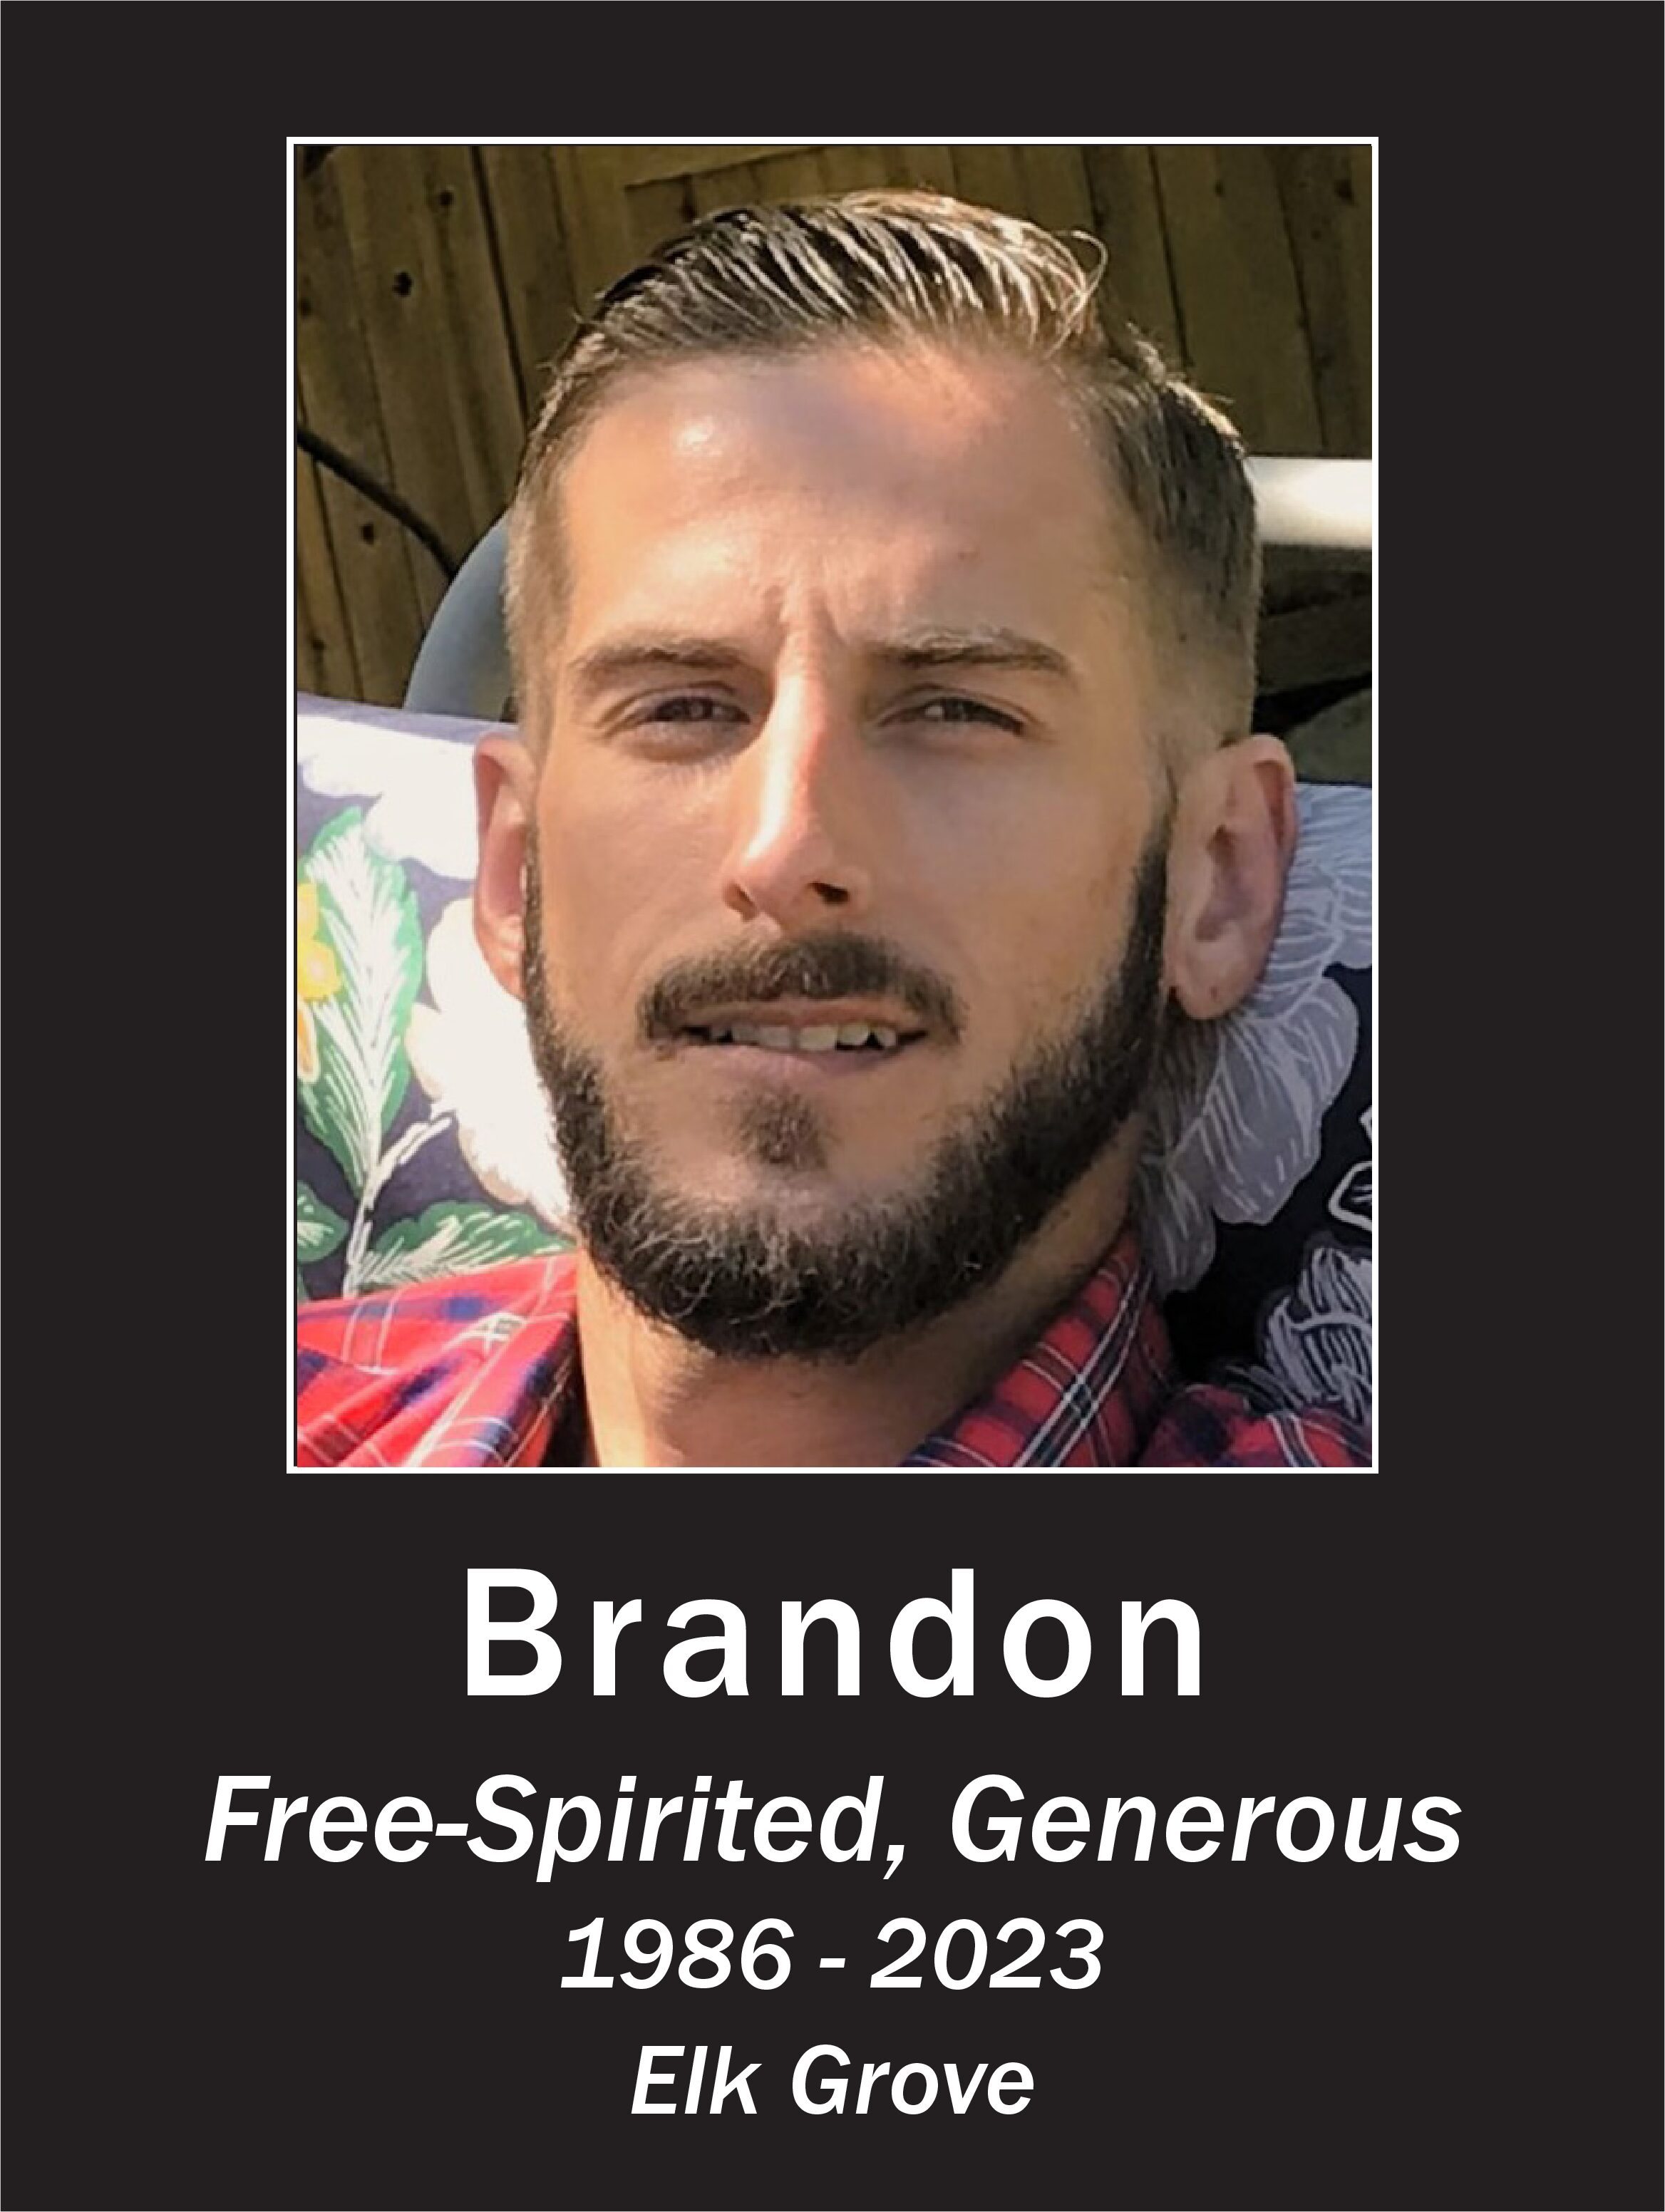 Brandon Memorial Poster